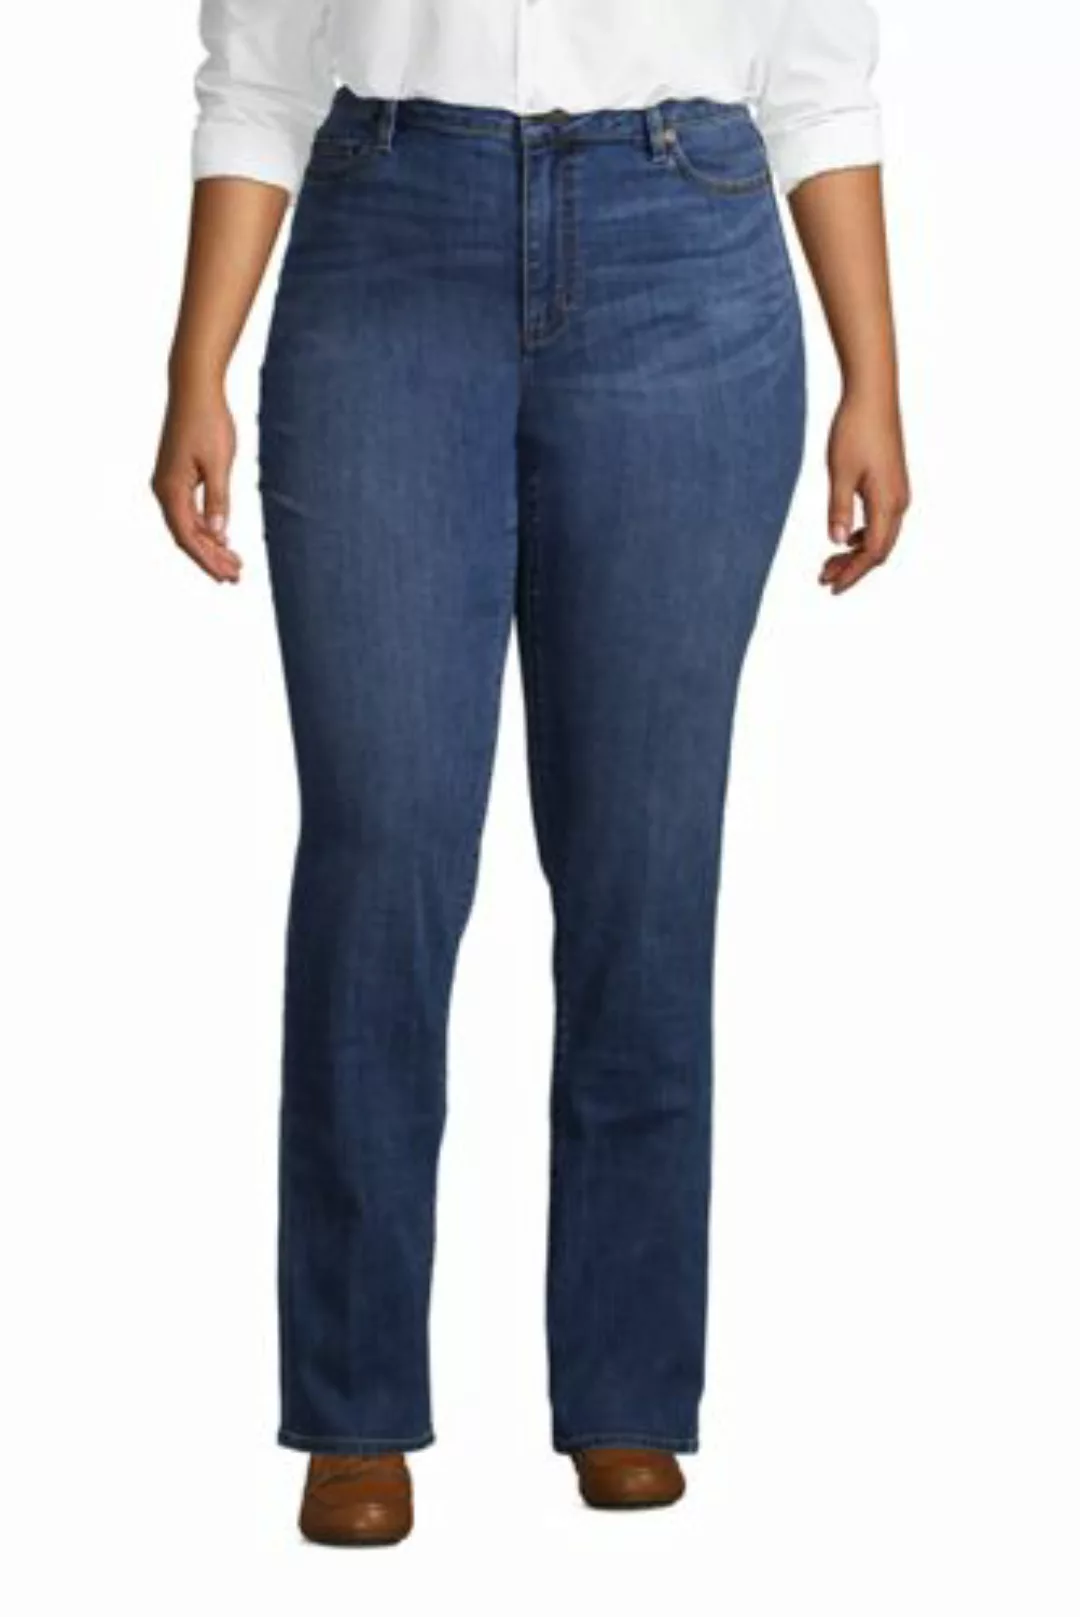 Straight Fit Öko Jeans Mid Waist in großen Größen, Damen, Größe: 56 32 Plus günstig online kaufen